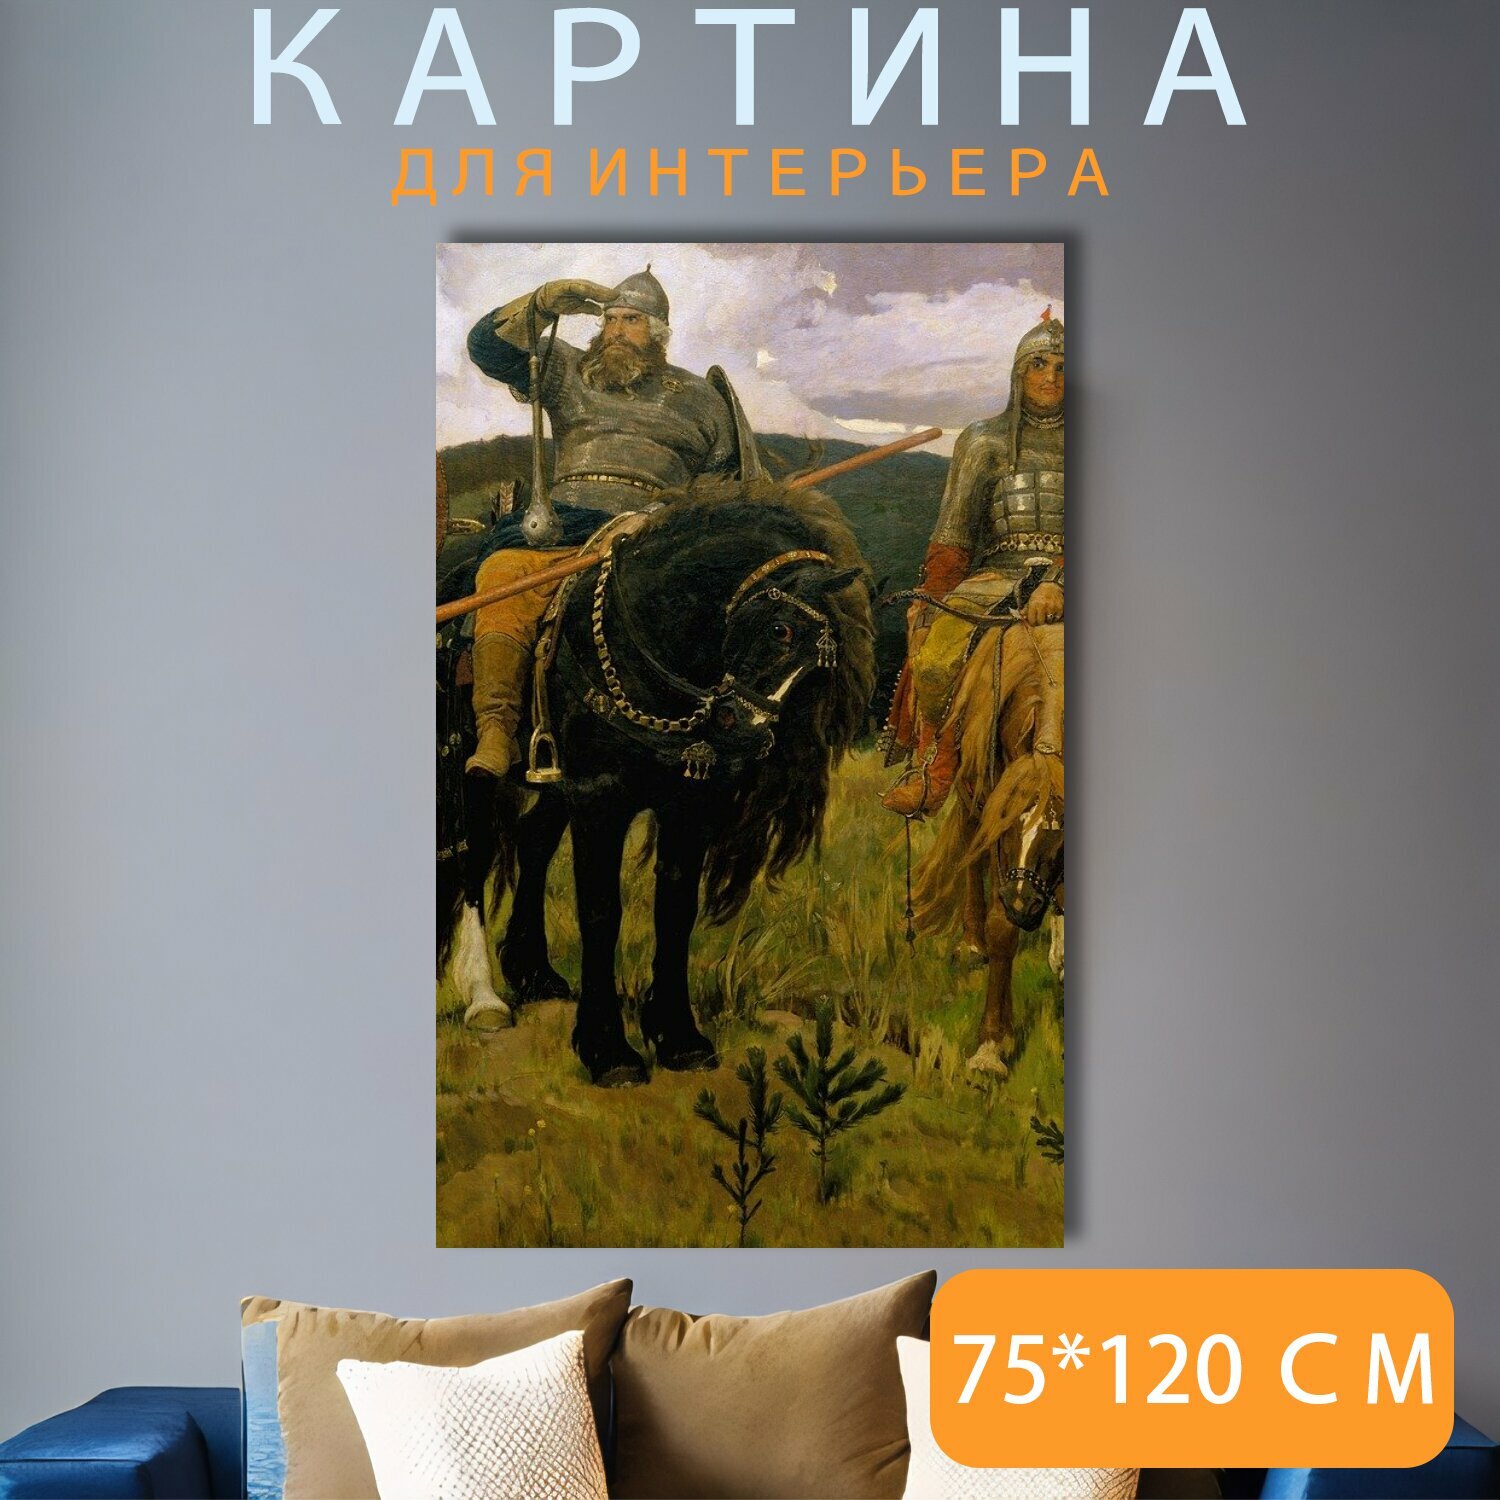 Картина на холсте "Живопись, васнецов виктор михайлович, богатыри" на подрамнике 75х120 см. для интерьера